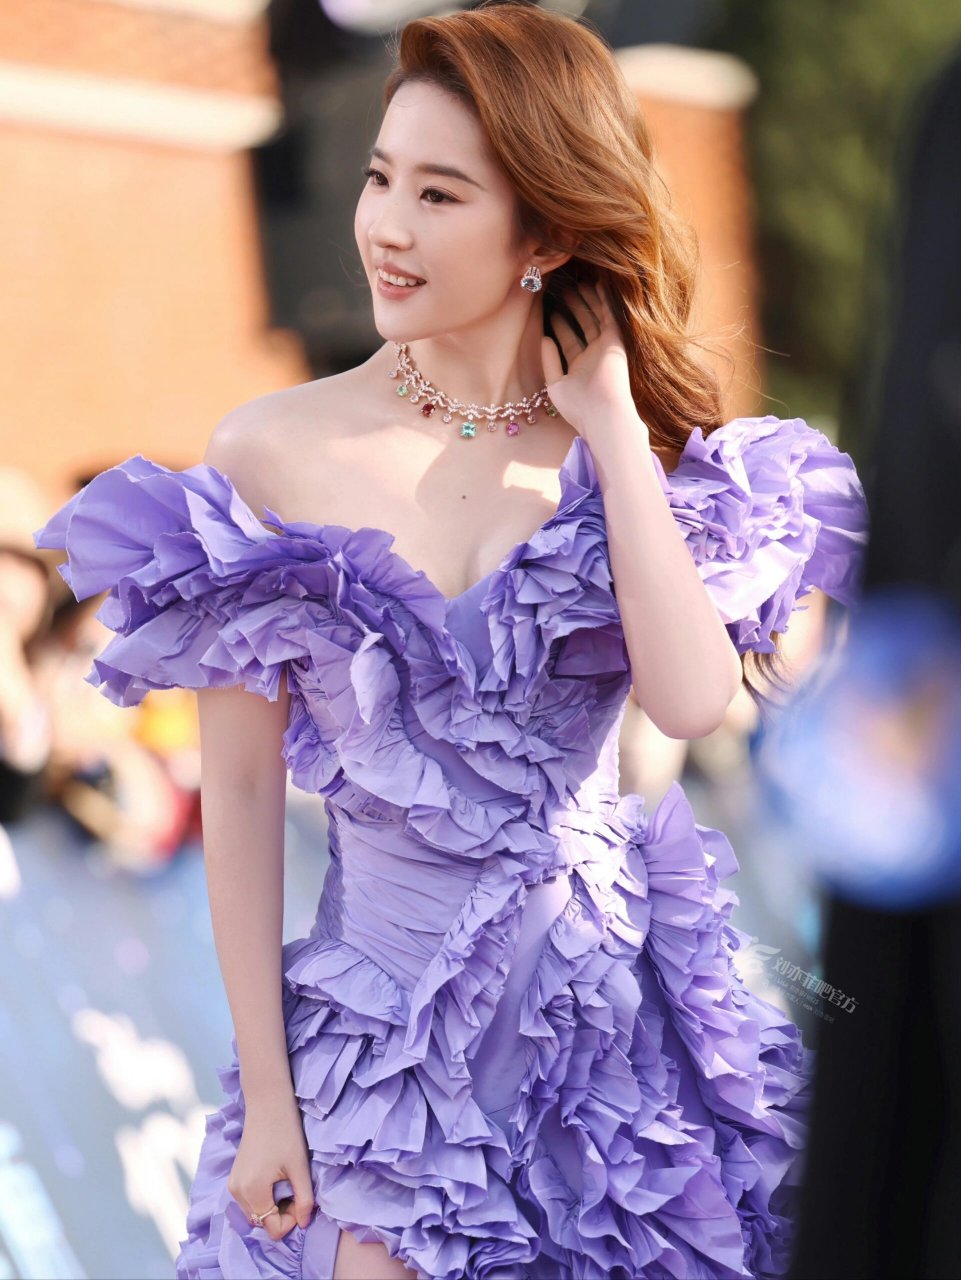 迪士尼公主回家90刘亦菲紫色花神活动造型  我非常兴奋地看到刘亦菲